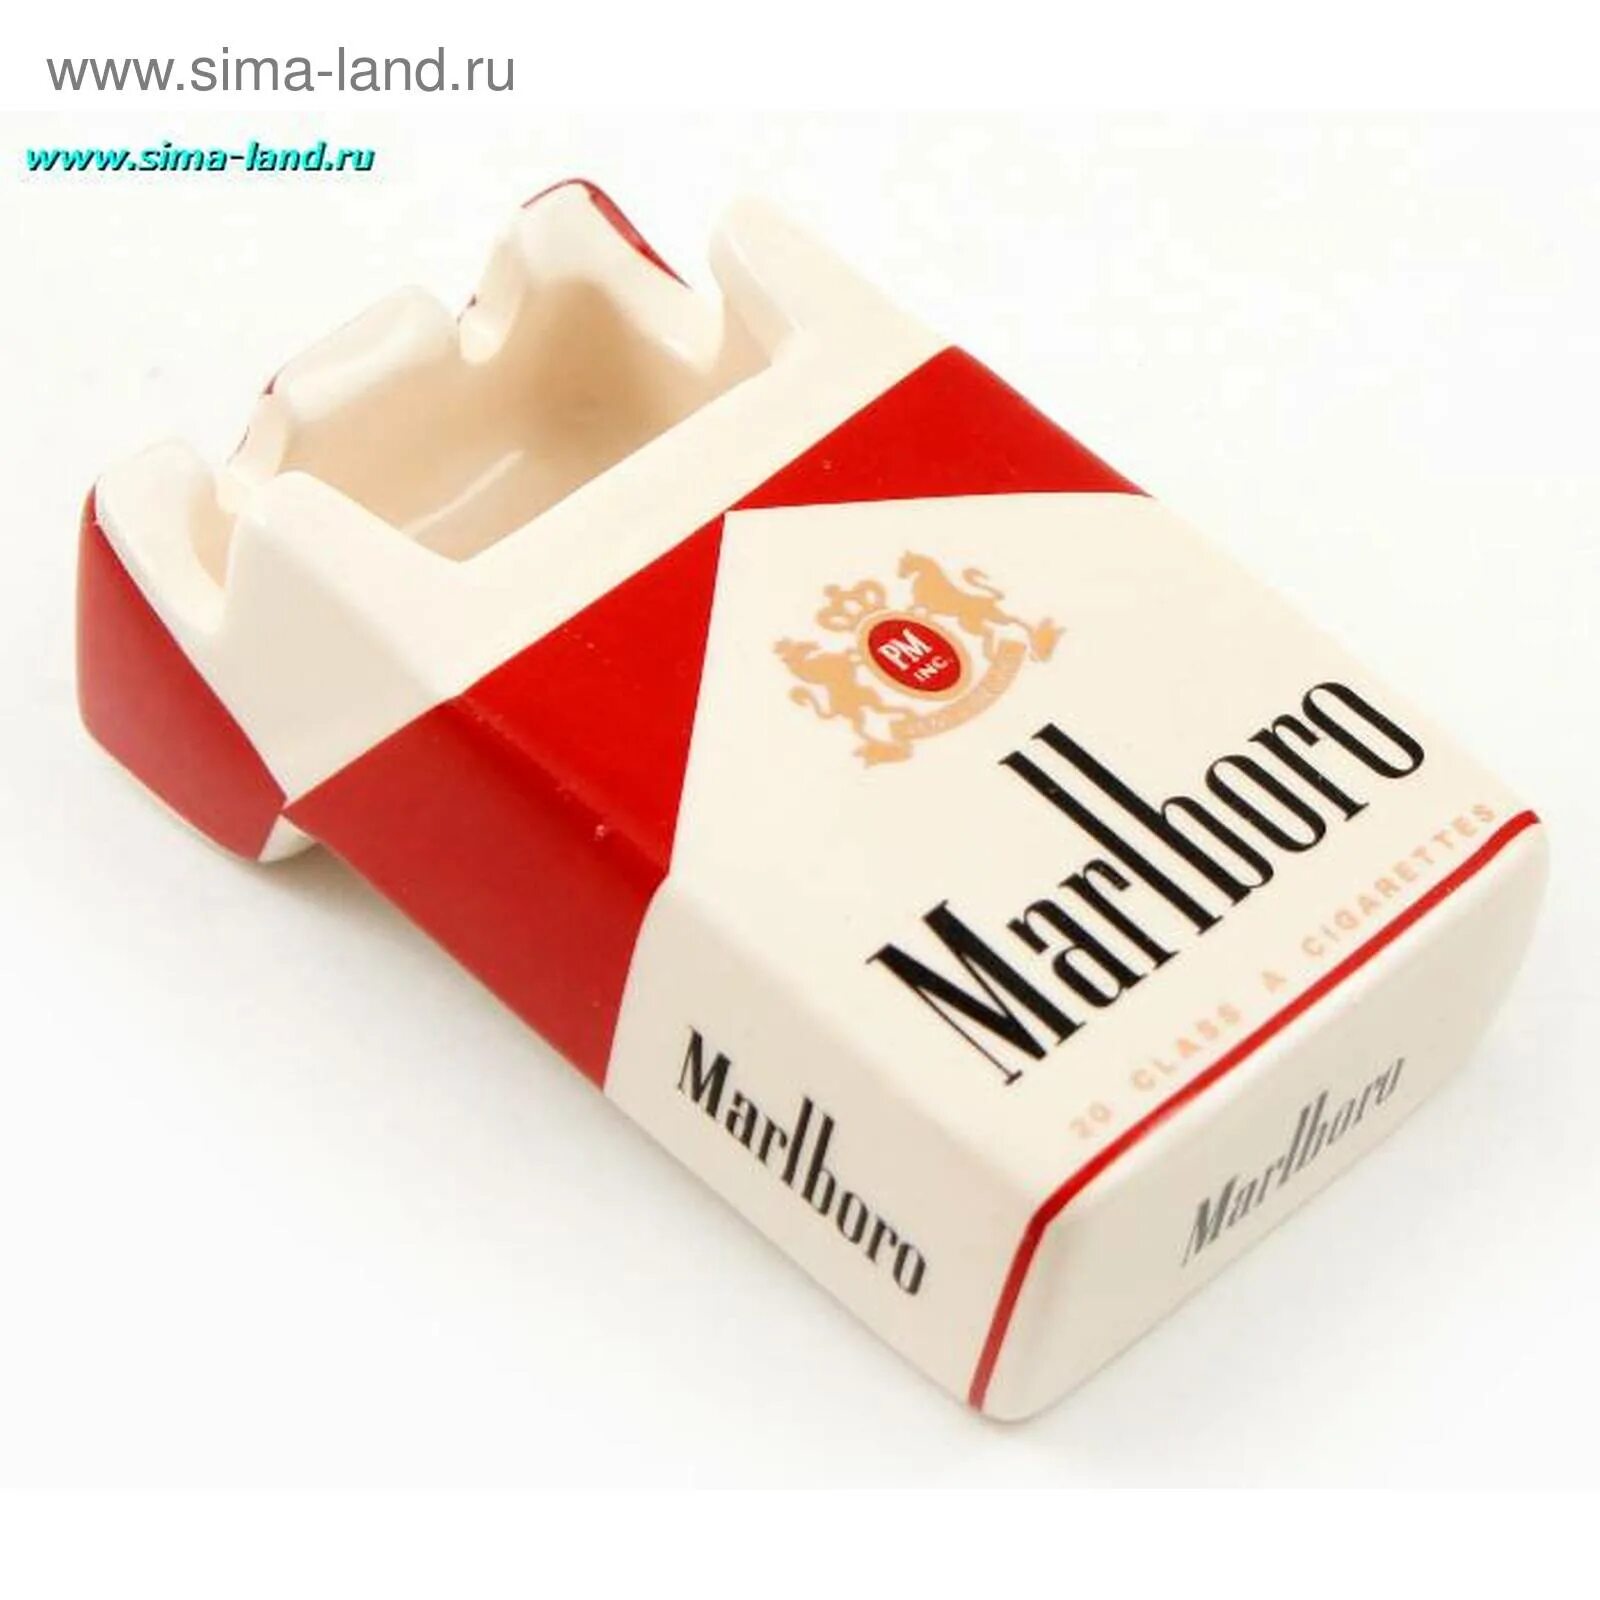 Пачка н. Пачка сигарет. Пустая пачка сигарет. Пепельница Мальборо. Упаковка из под сигарет.